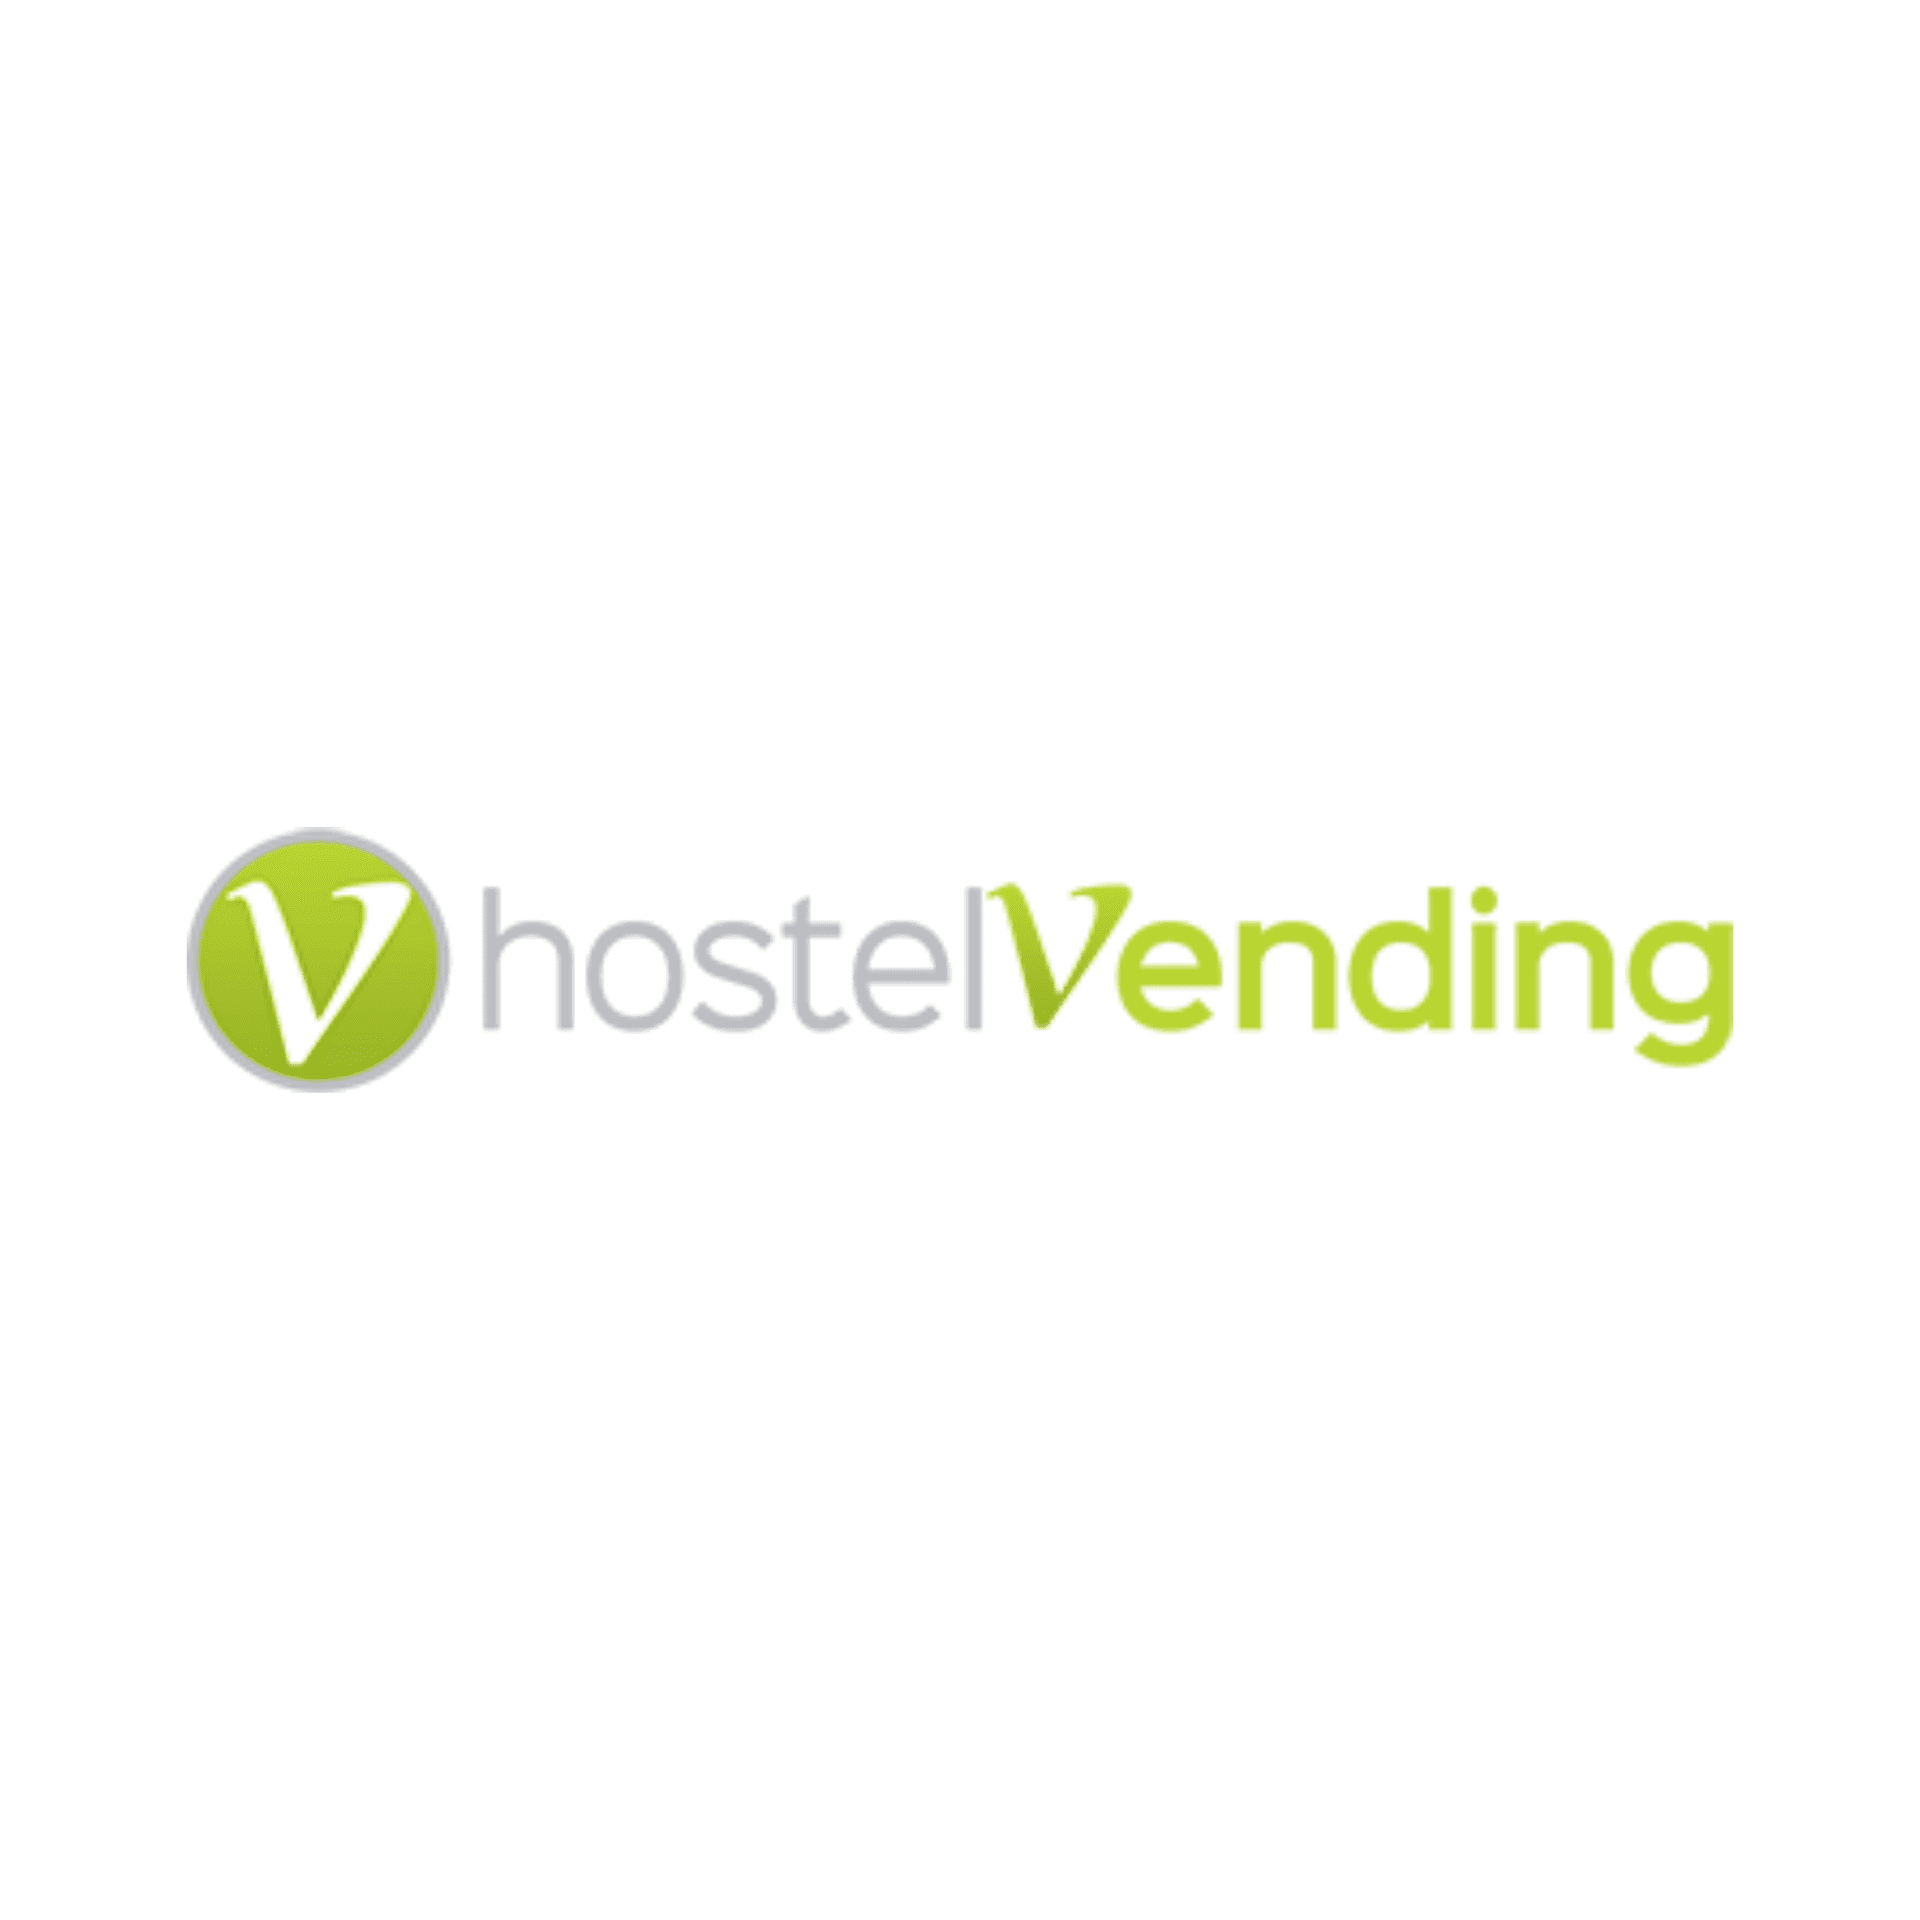 Hostel Vending